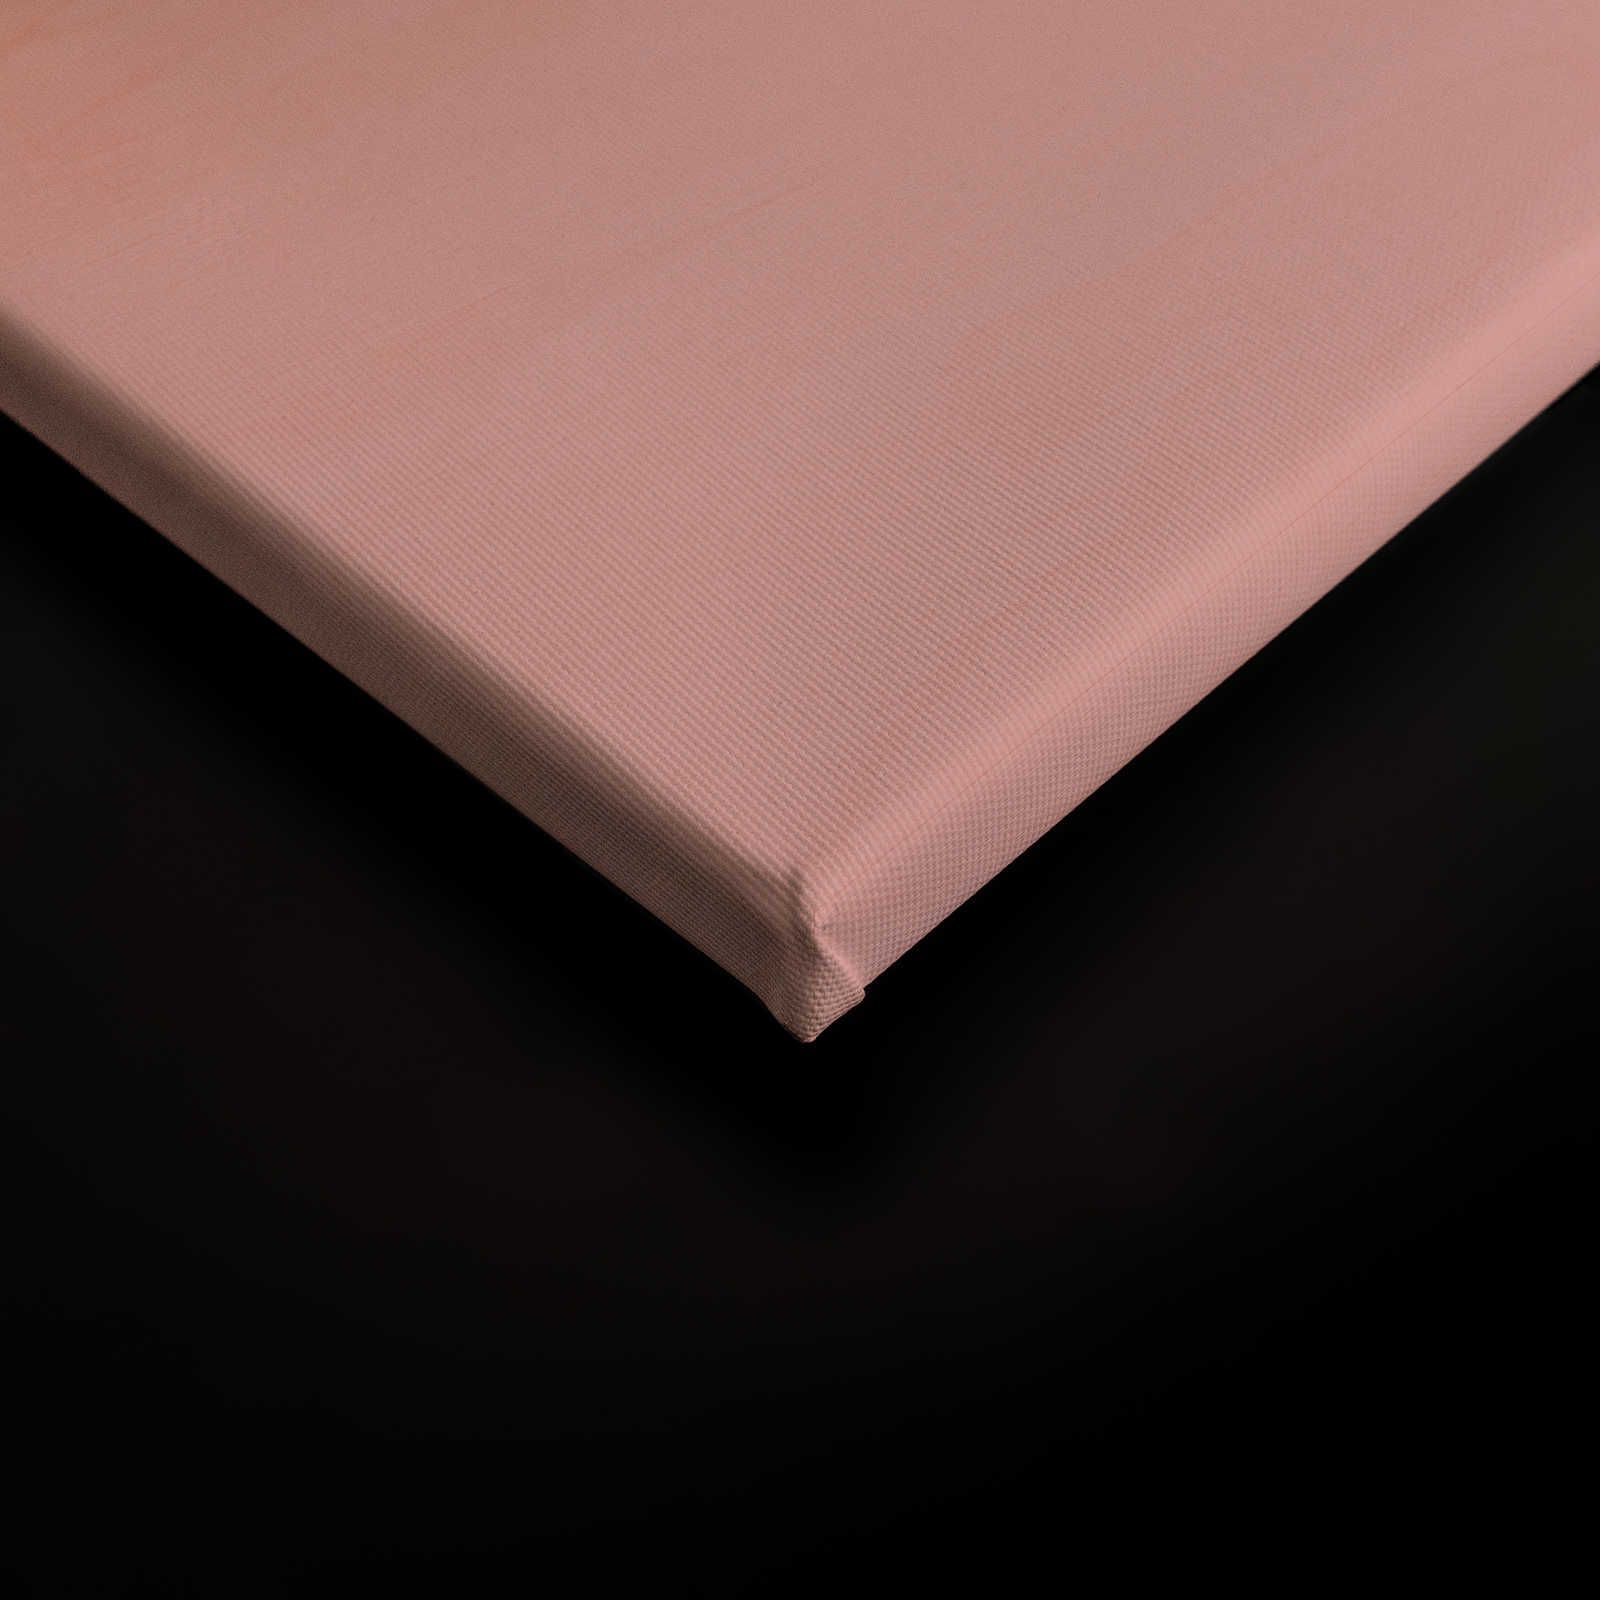             Laboratorio 2 - Pittura su tela Effetto Ombre rosa e venature del legno - 0,90 m x 0,60 m
        